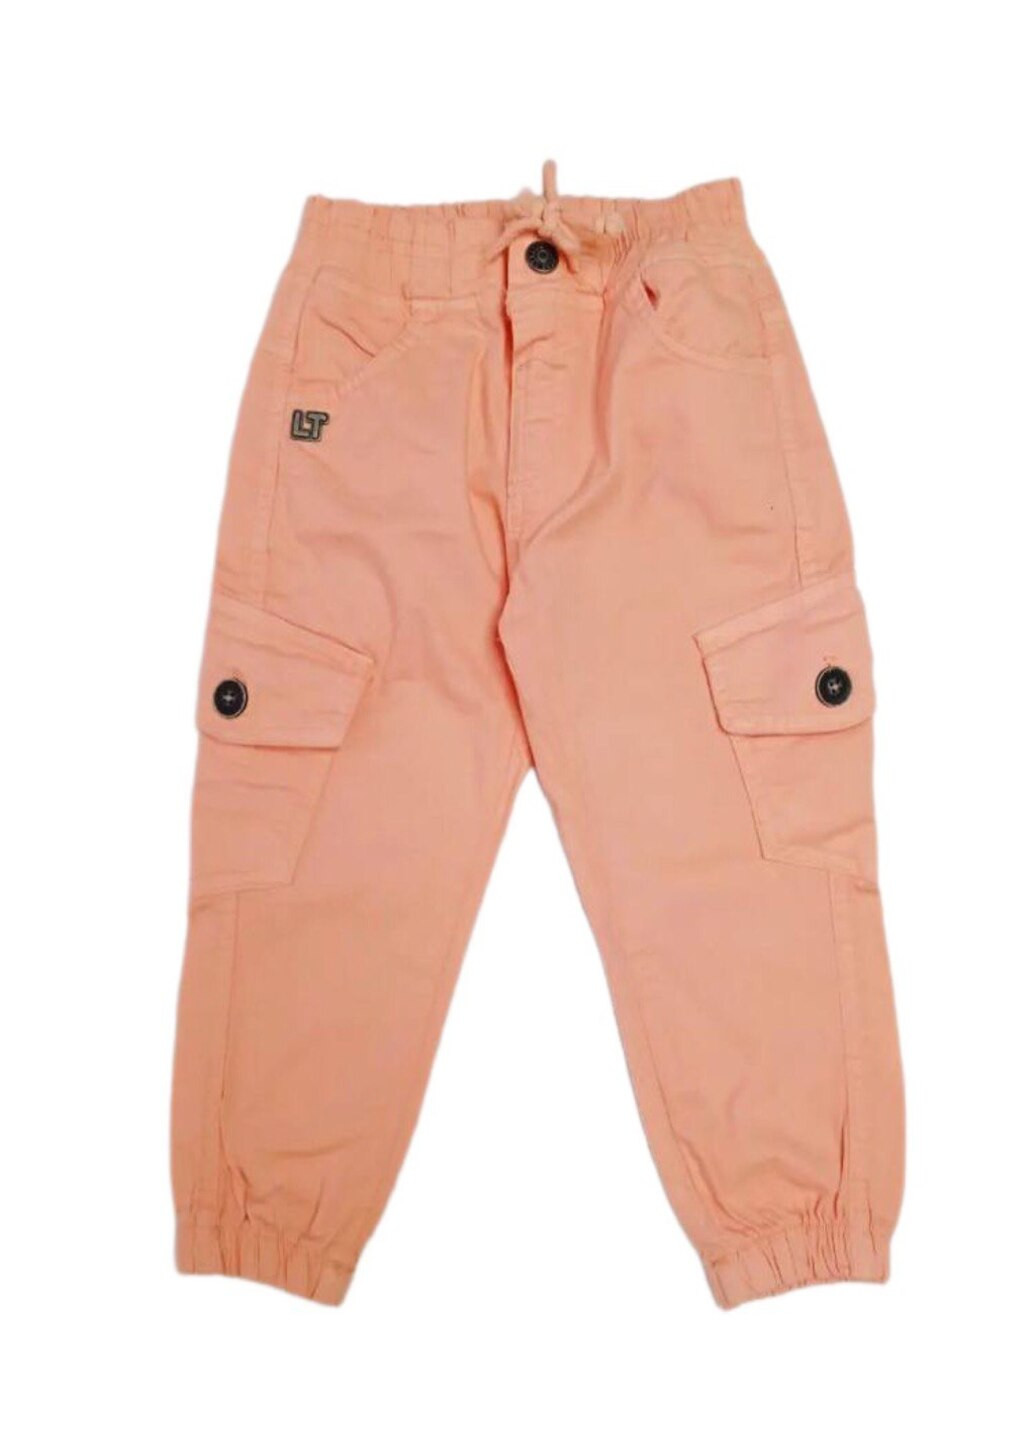 Персиковые стильные джинсы джогеры персиковый цвет для девочек Lilitop